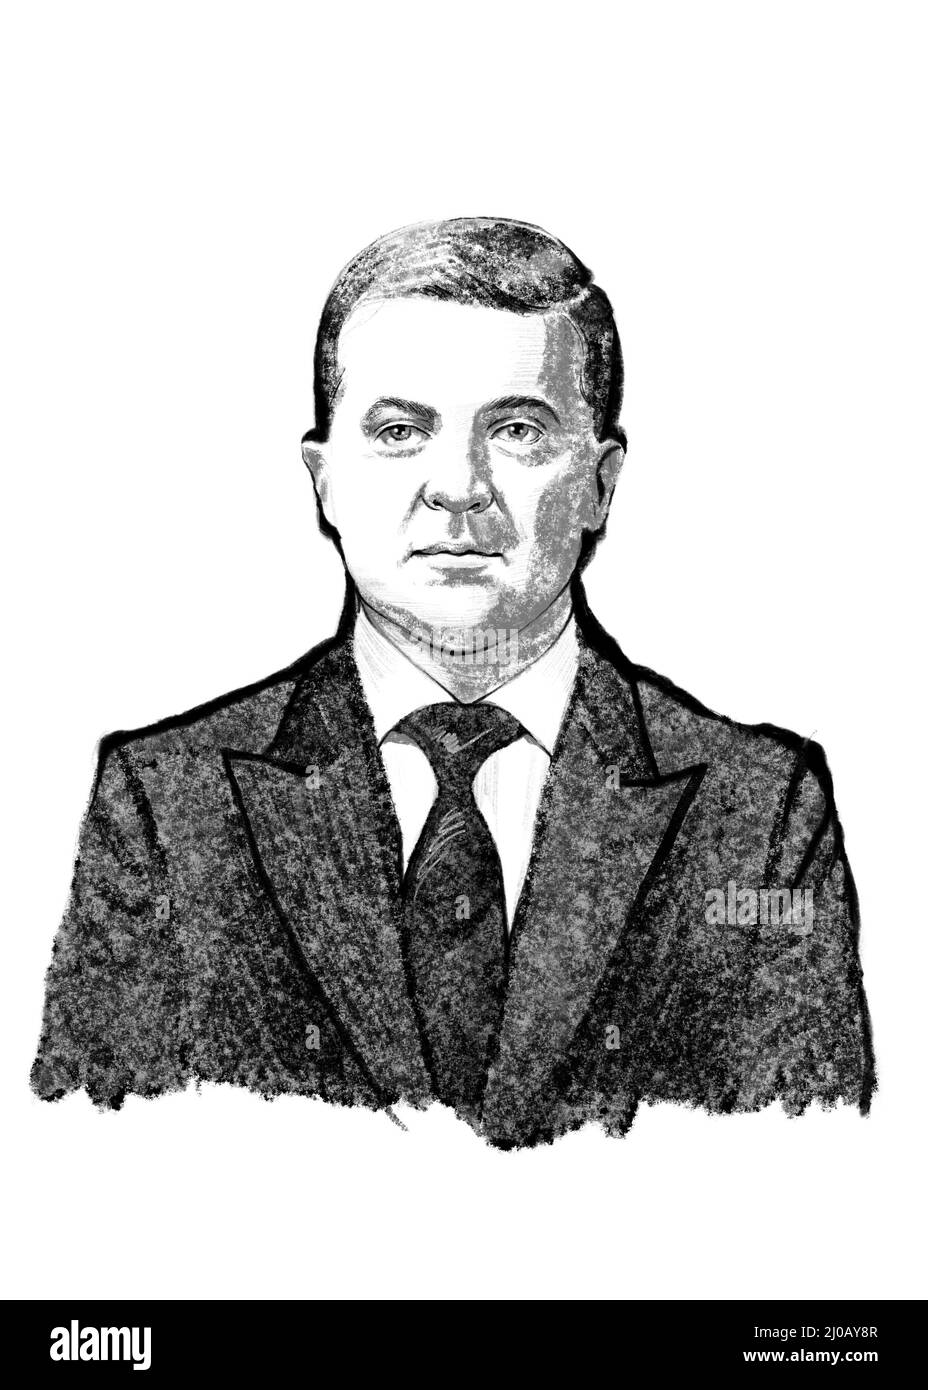 President of Ukraine Volodymyr Zelensky portrait illustration. Stock Photo